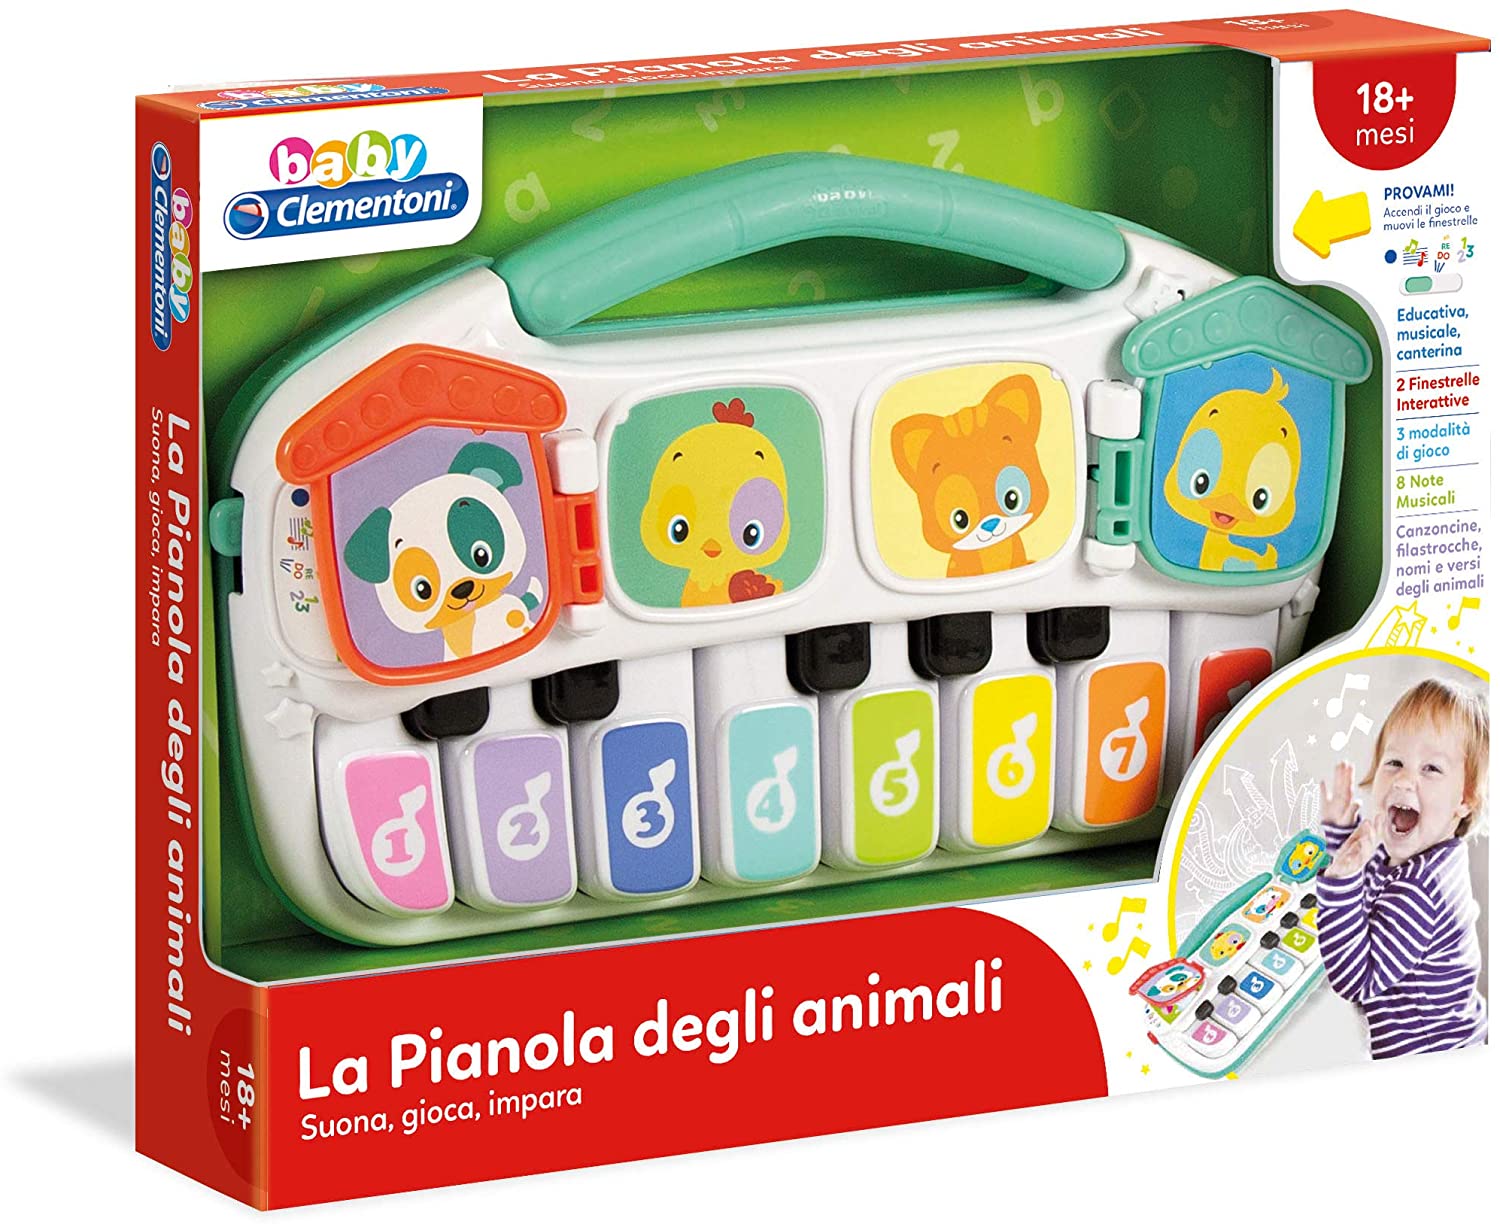 Baby Clementoni - La pianola degli animali - Italian Edition